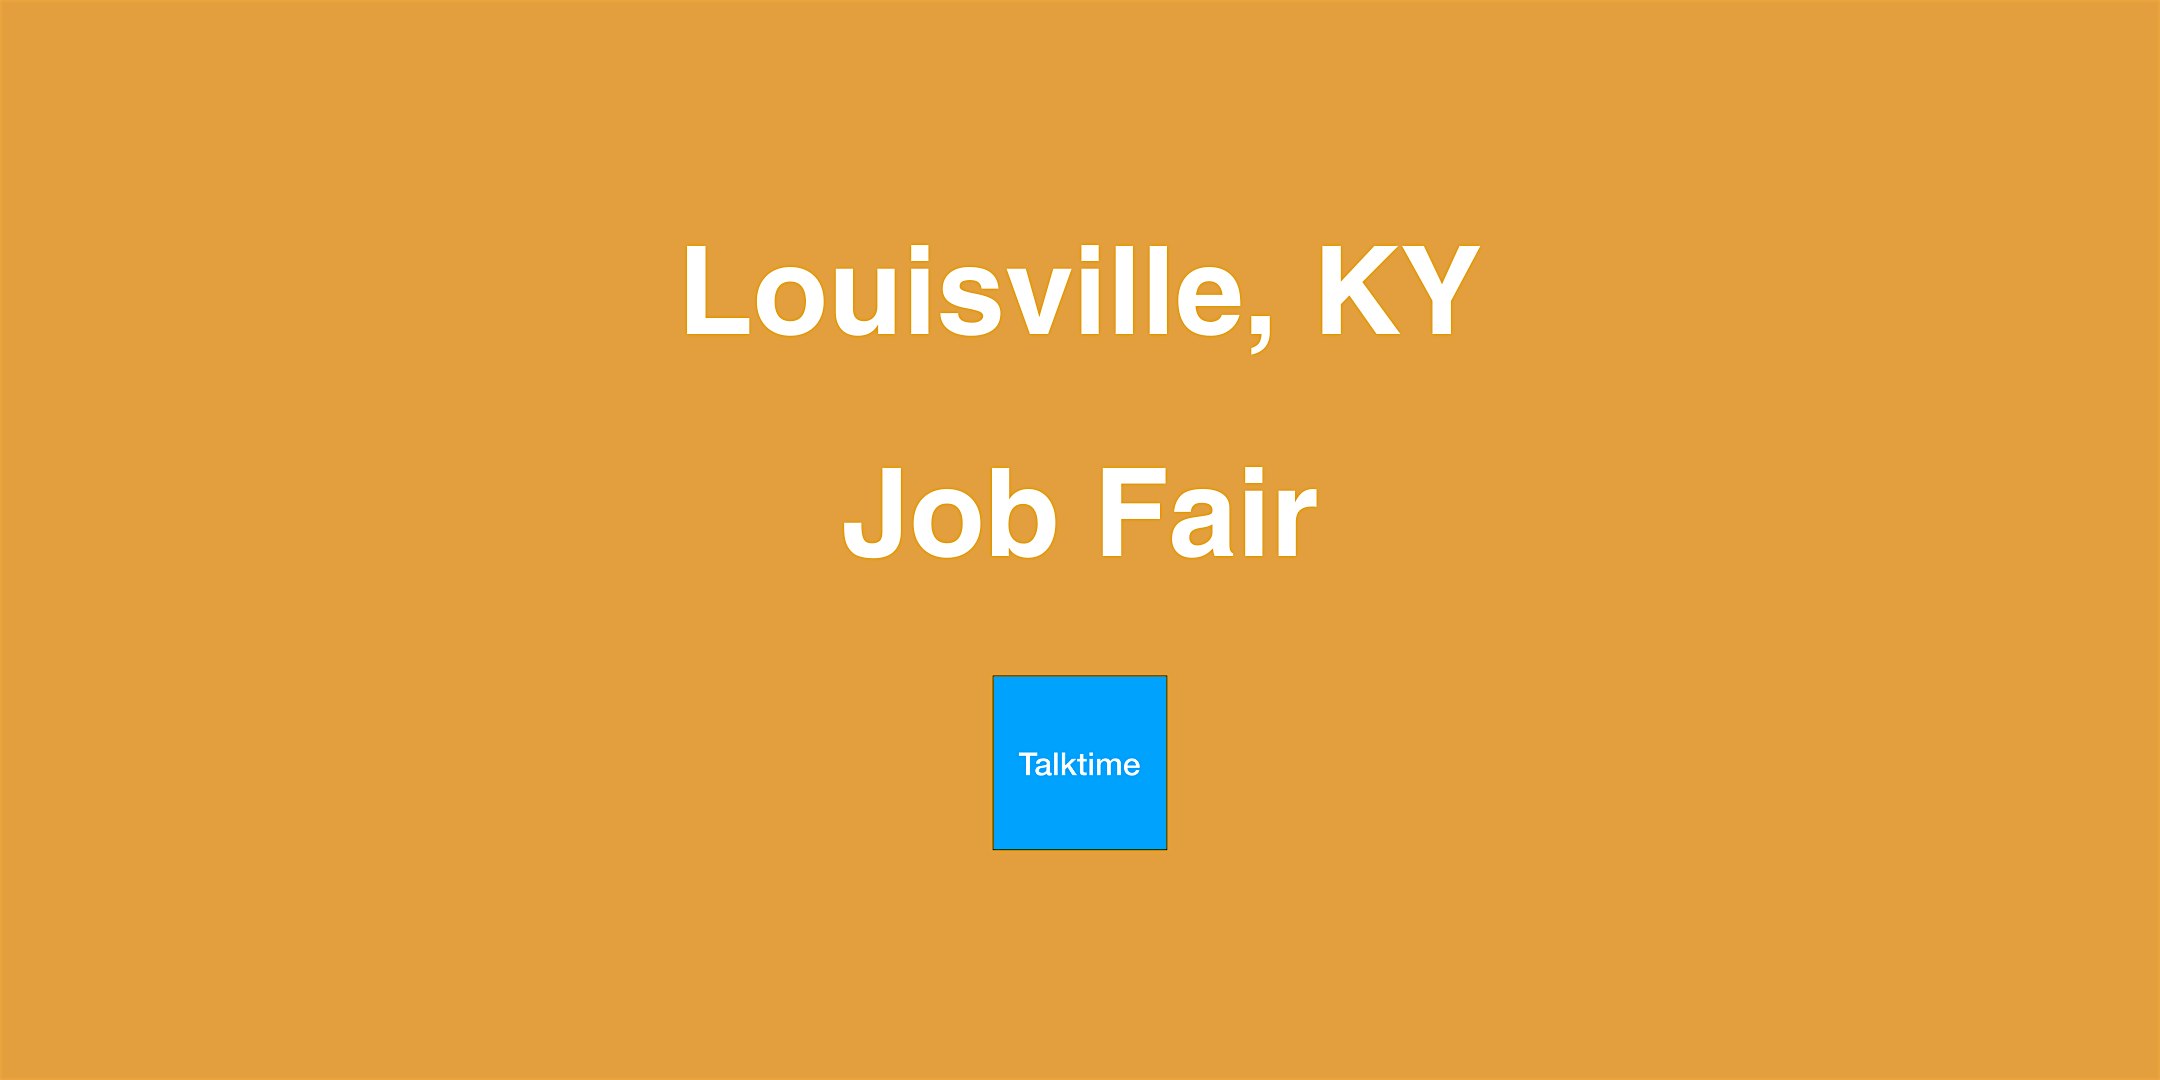 Job Fair - Louisville